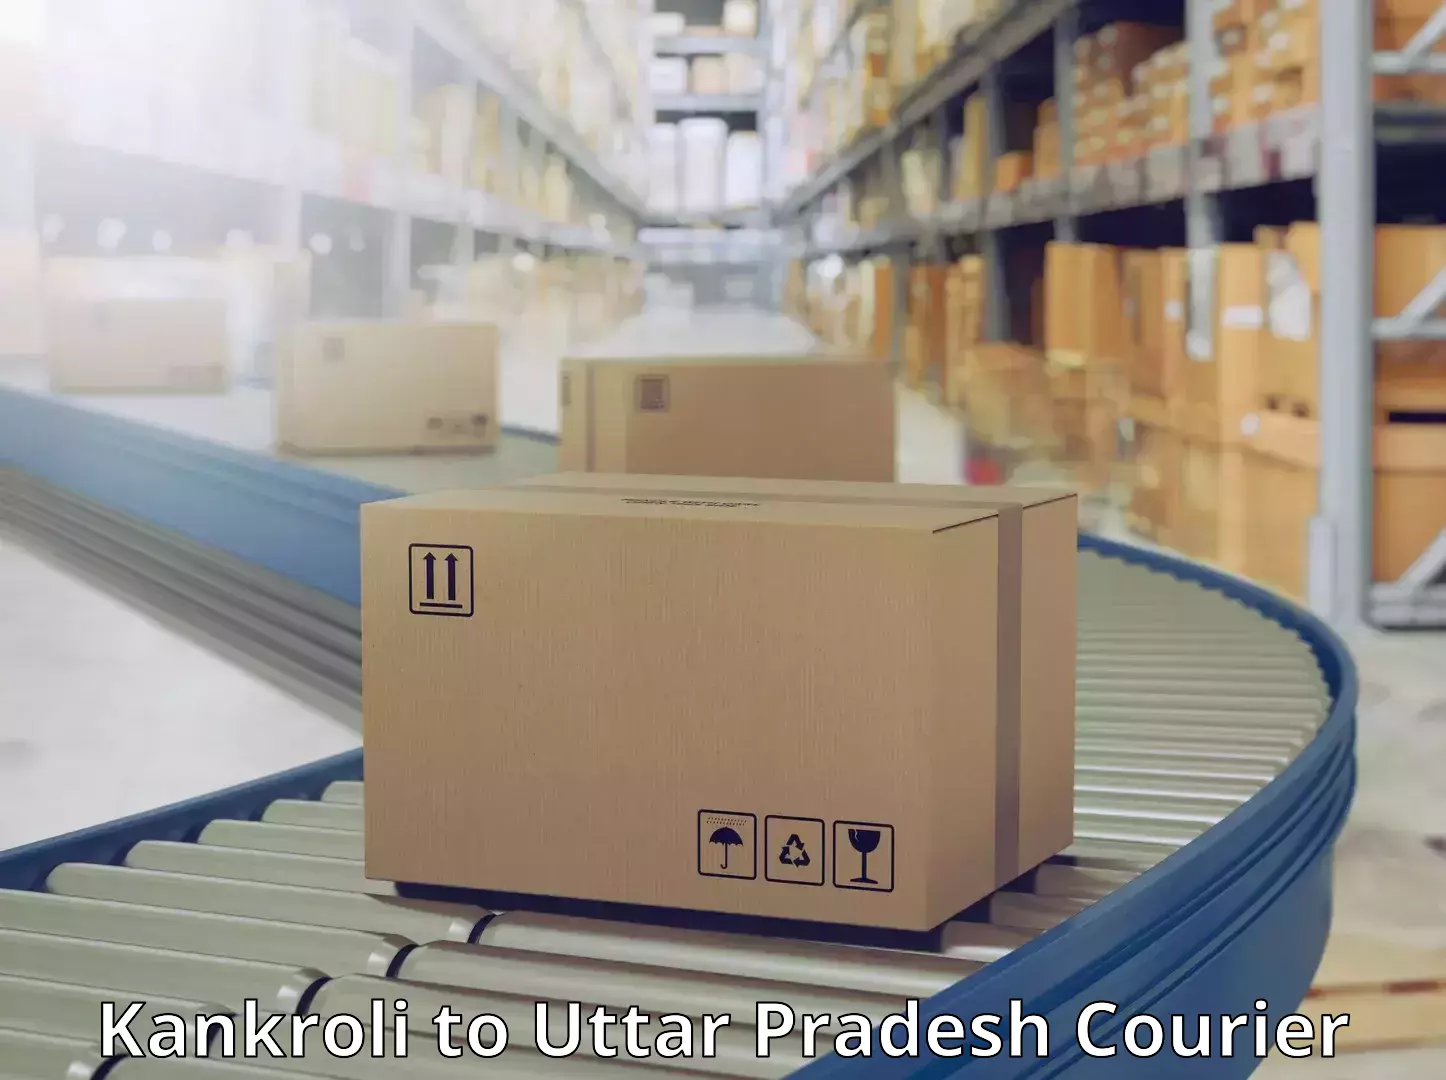 Smart parcel solutions Kankroli to Uttar Pradesh